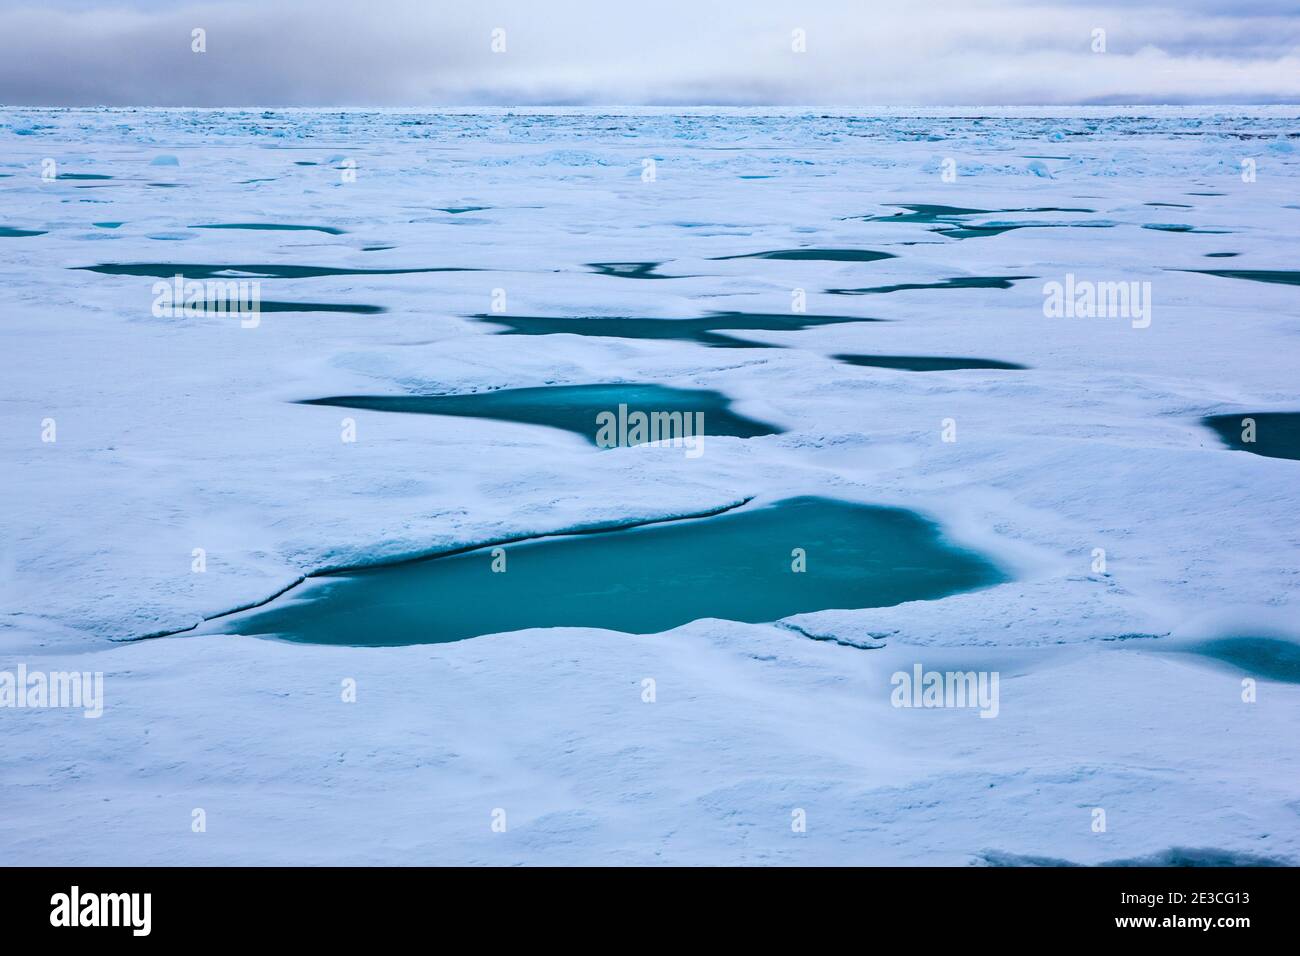 Arktisches Meereis, Framstraße, zwischen Grönland und Spitzbergen, September 2009. Im August 2012 erreichte das arktische Meereis ein Rekordminimum - das wird uns beeinflussen Stockfoto